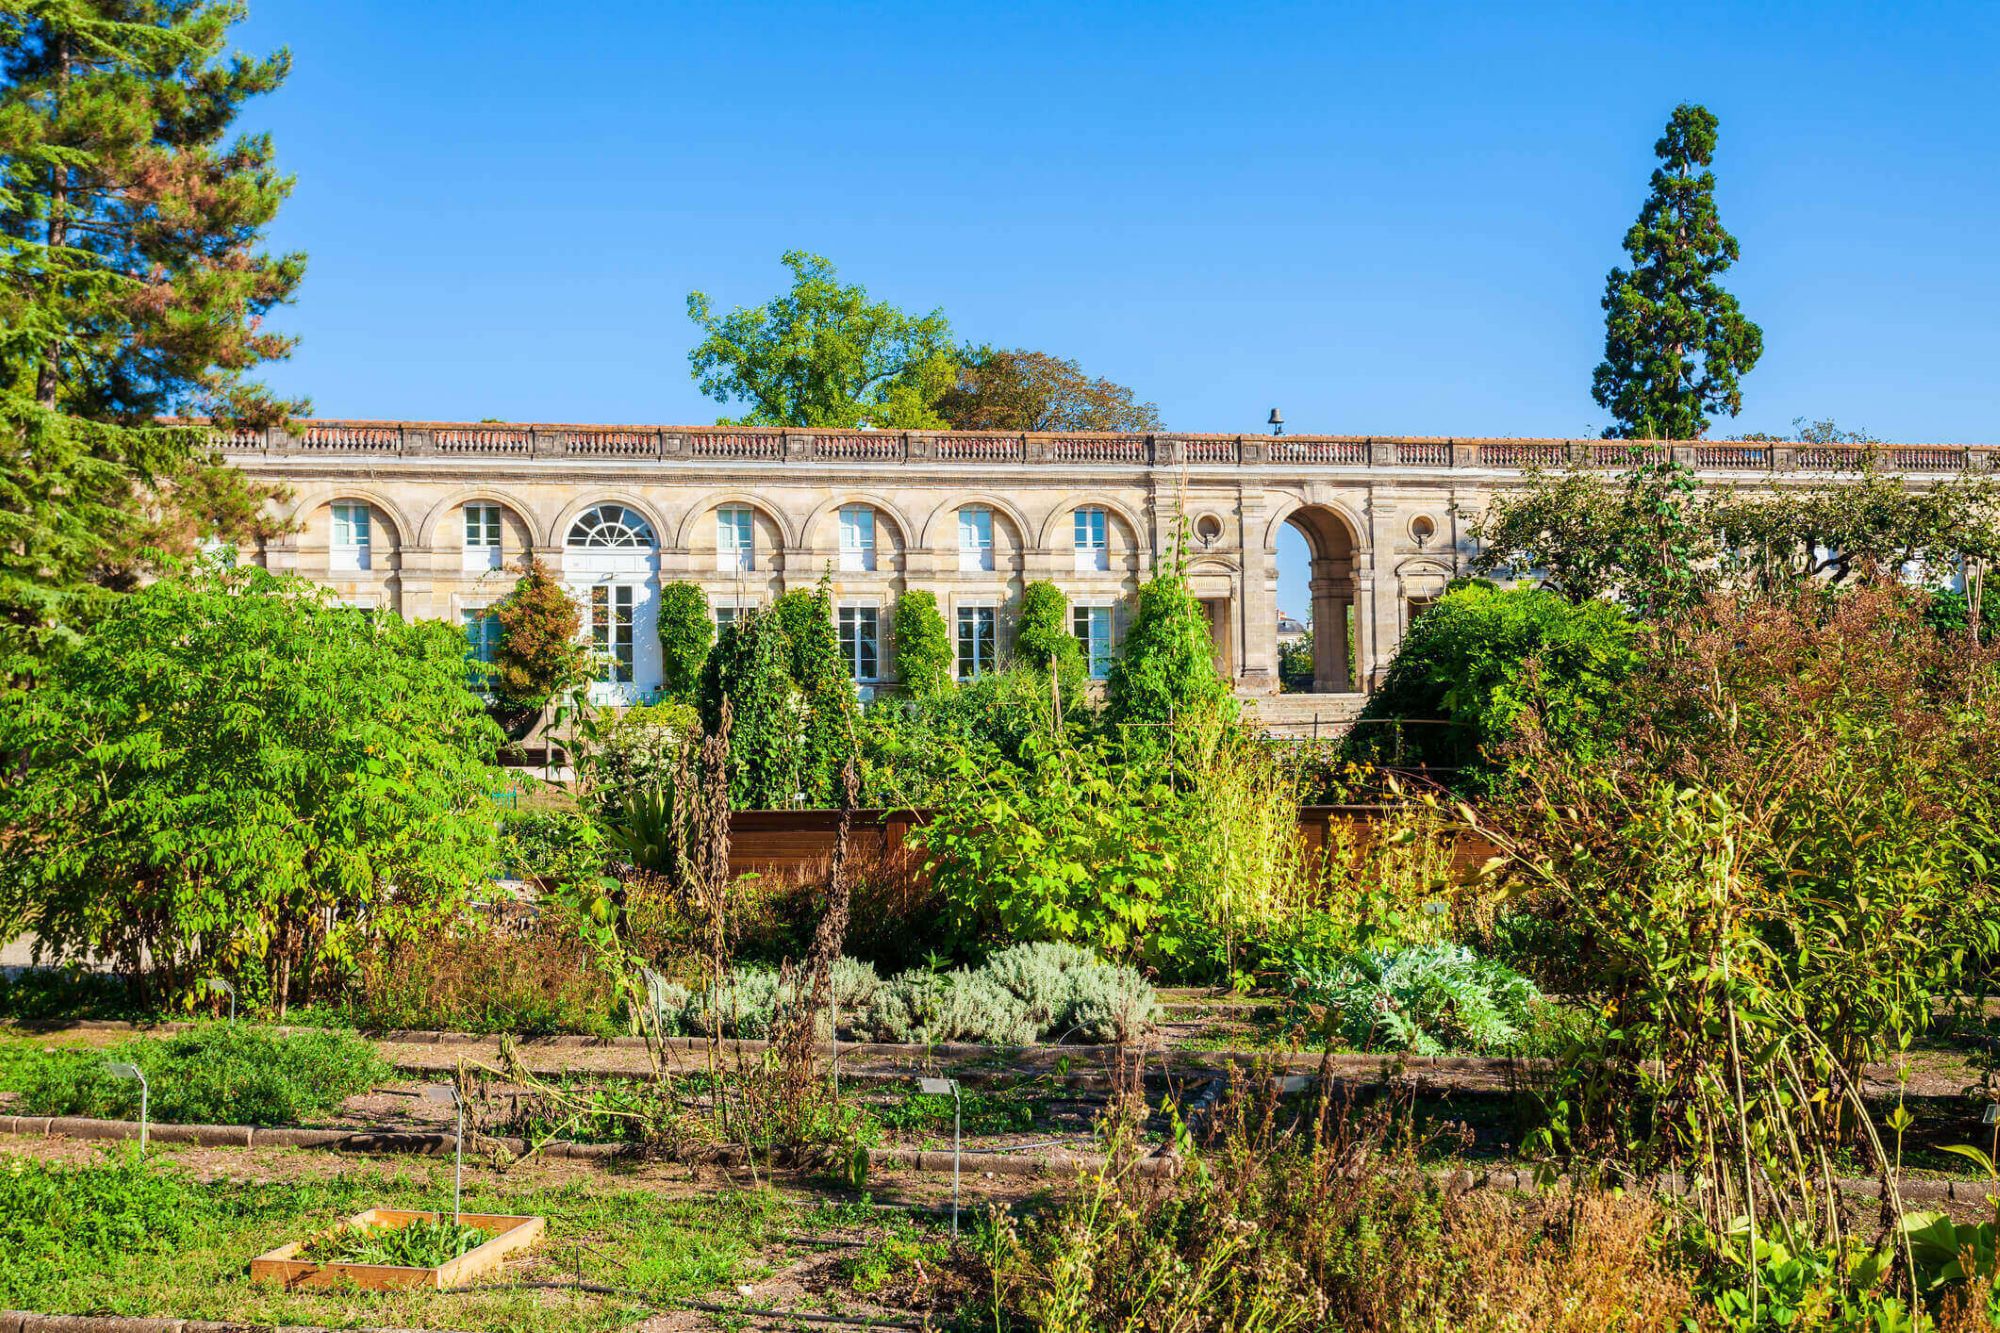 Jardins public de Bordeaux